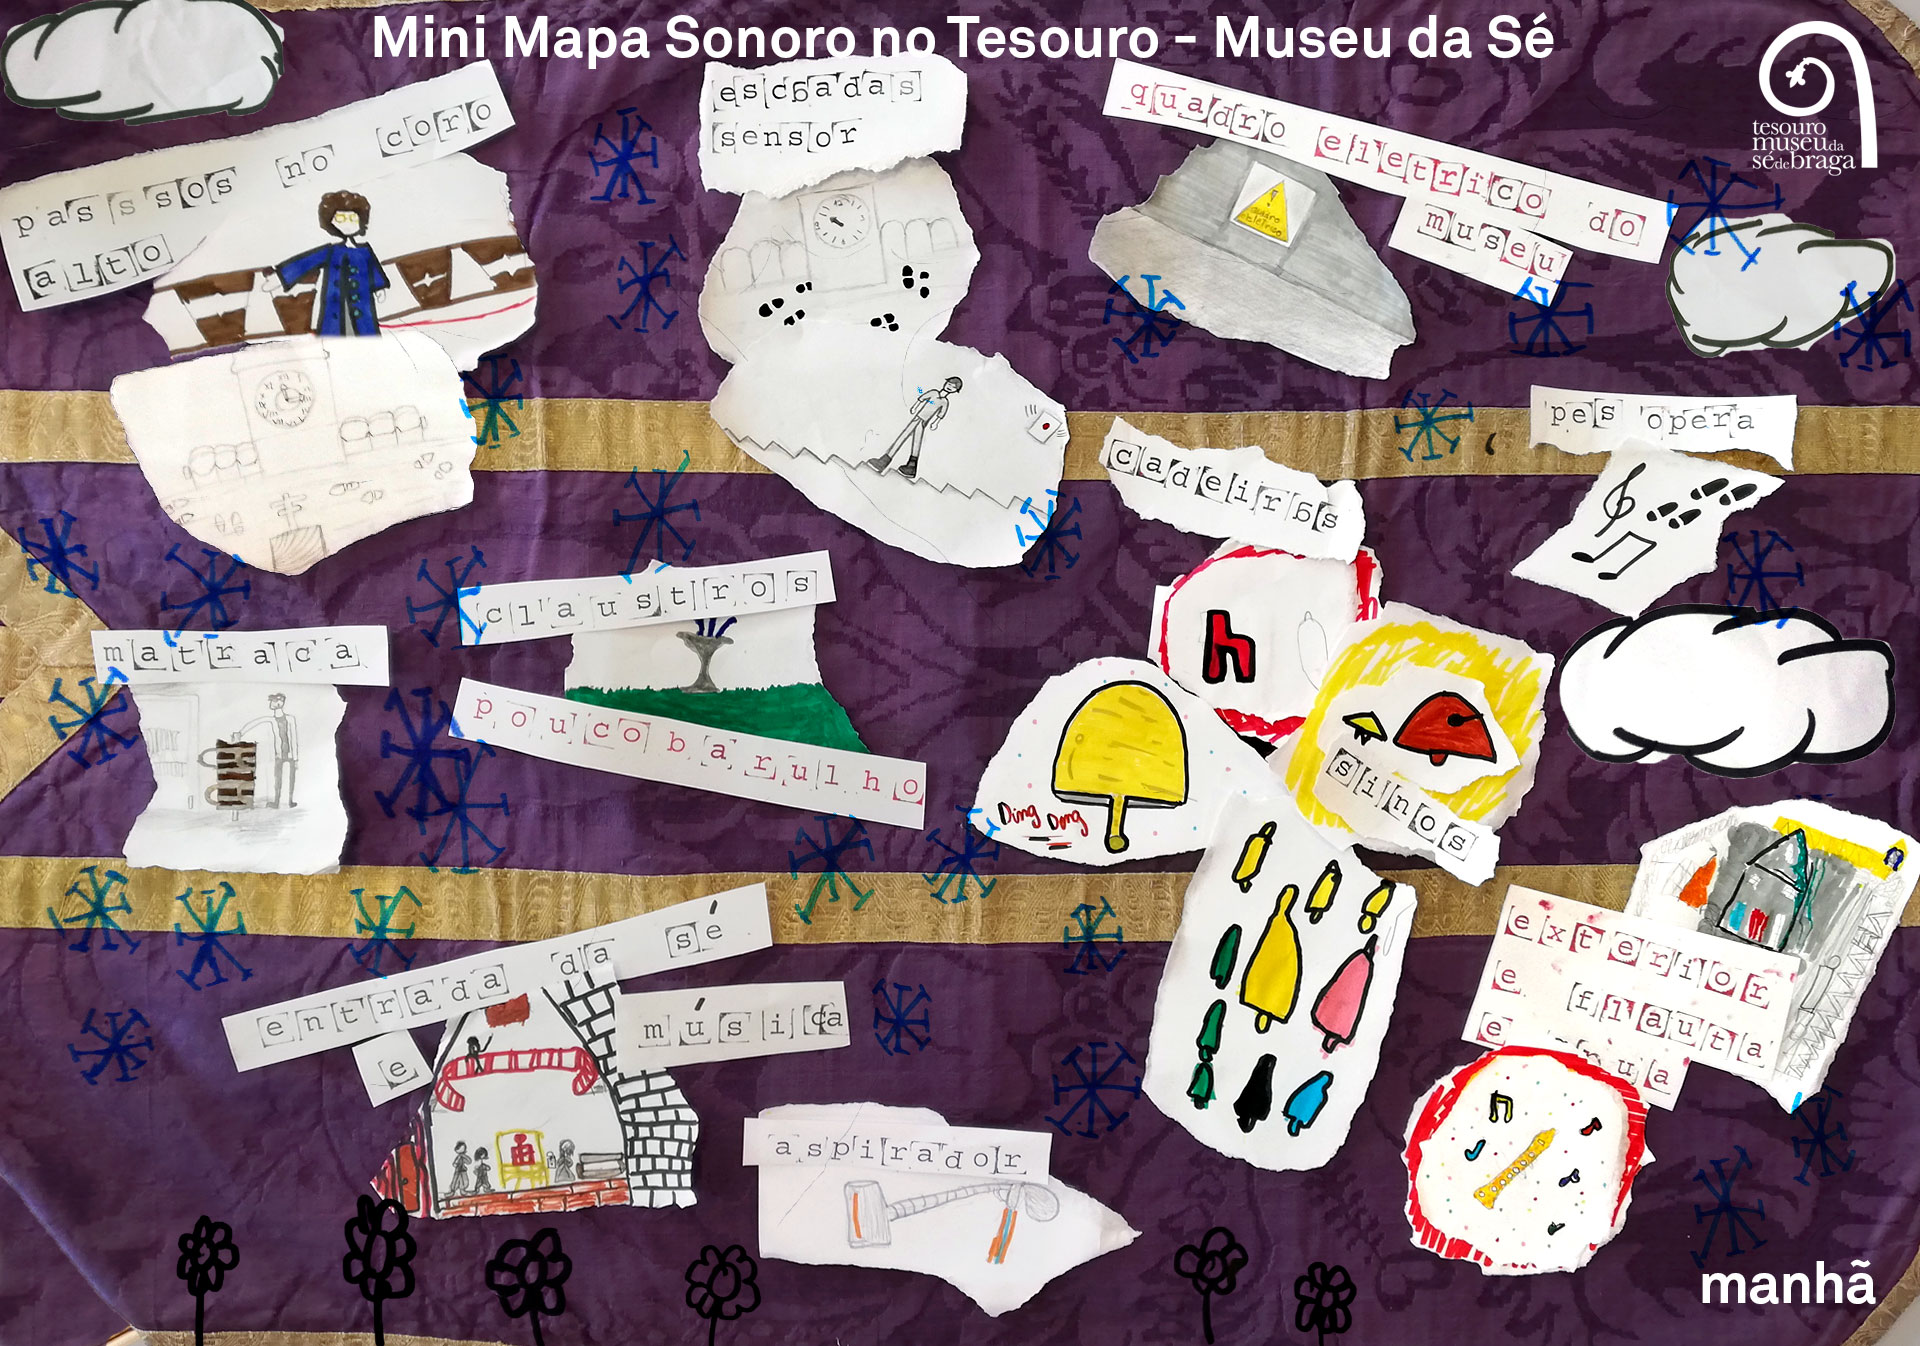 Mapa Mini Mapa Sonoro Mini Mapa Sonoro no Tesouro-Museu da Sé de Braga - Colégio Teresiano